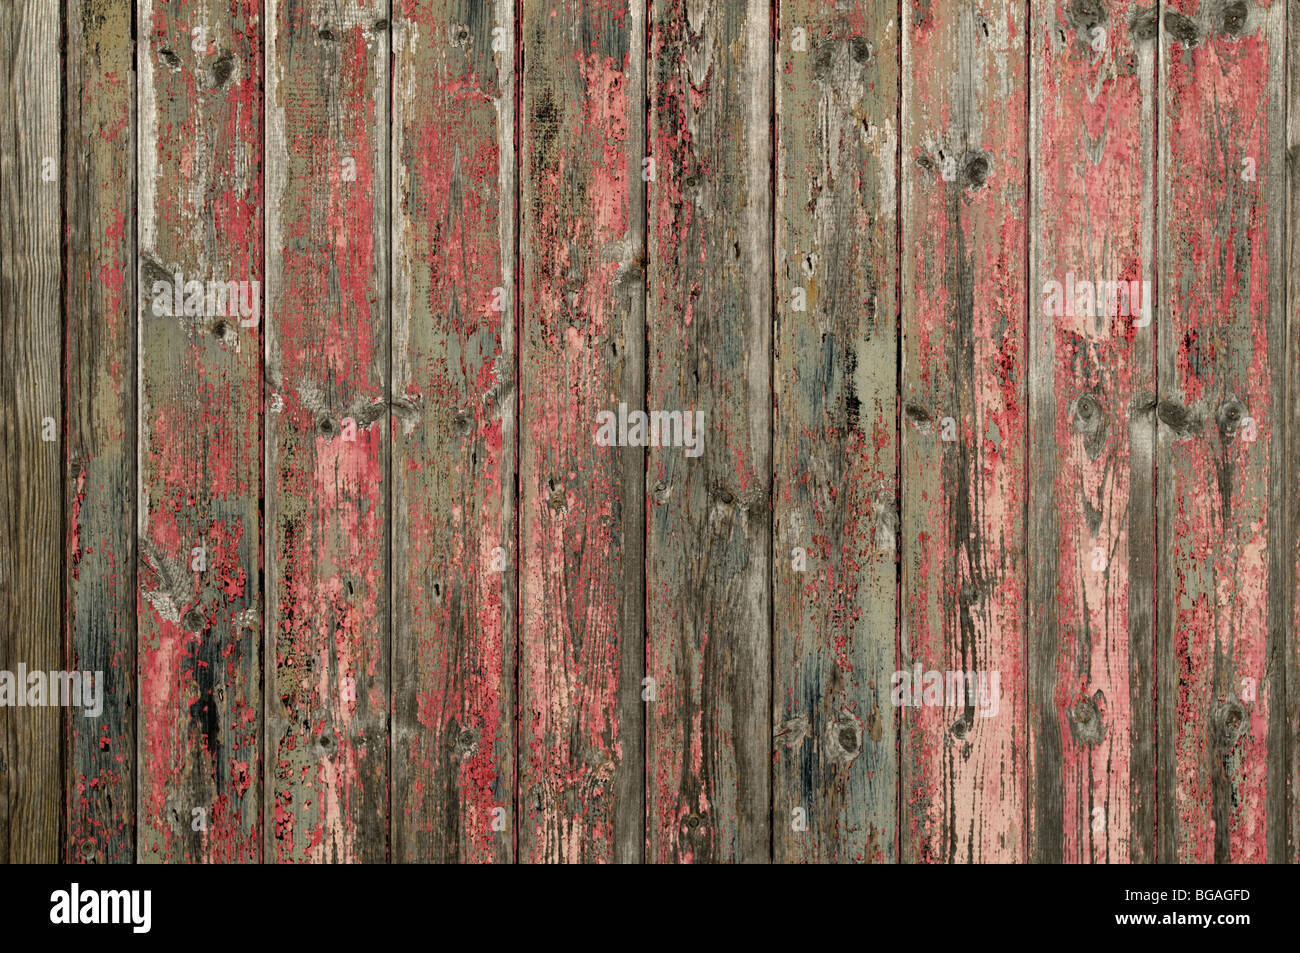 Mur en bois avec la décoloration de la peinture rose background. Banque D'Images